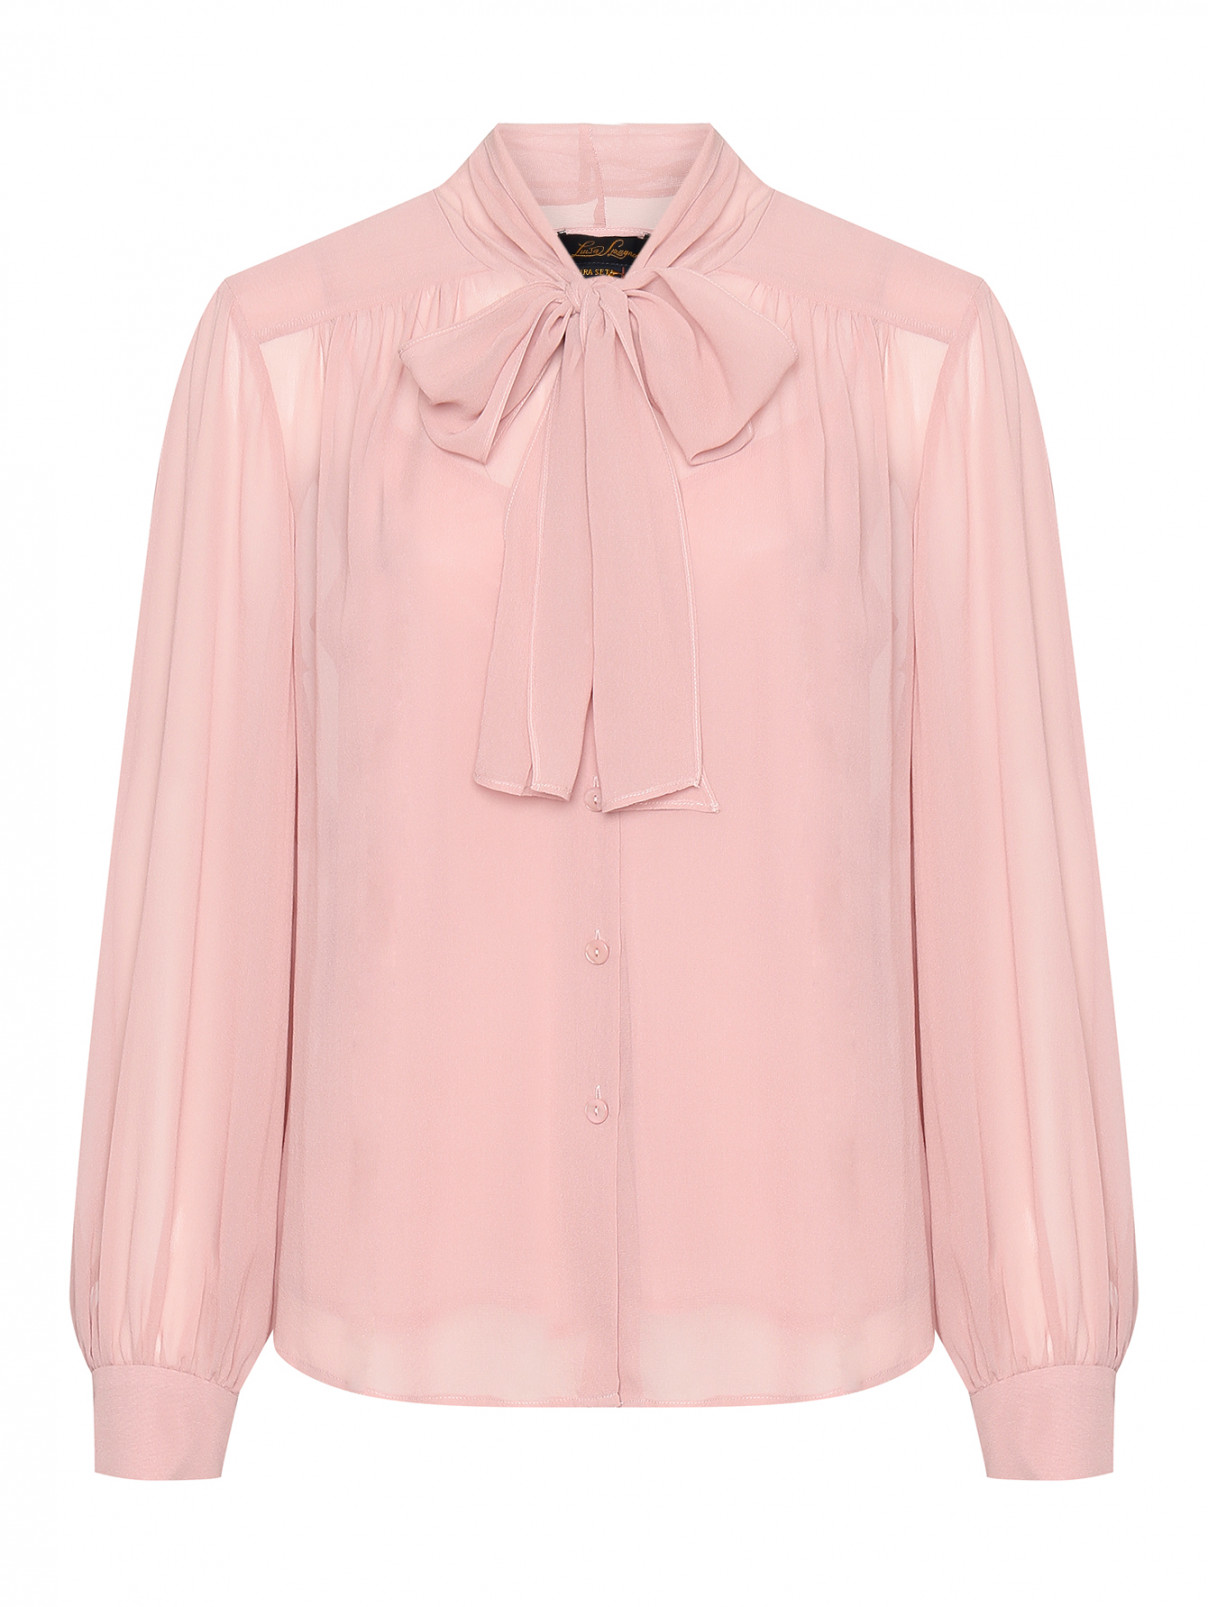 Блуза из шелка Luisa Spagnoli  –  Общий вид  – Цвет:  Розовый